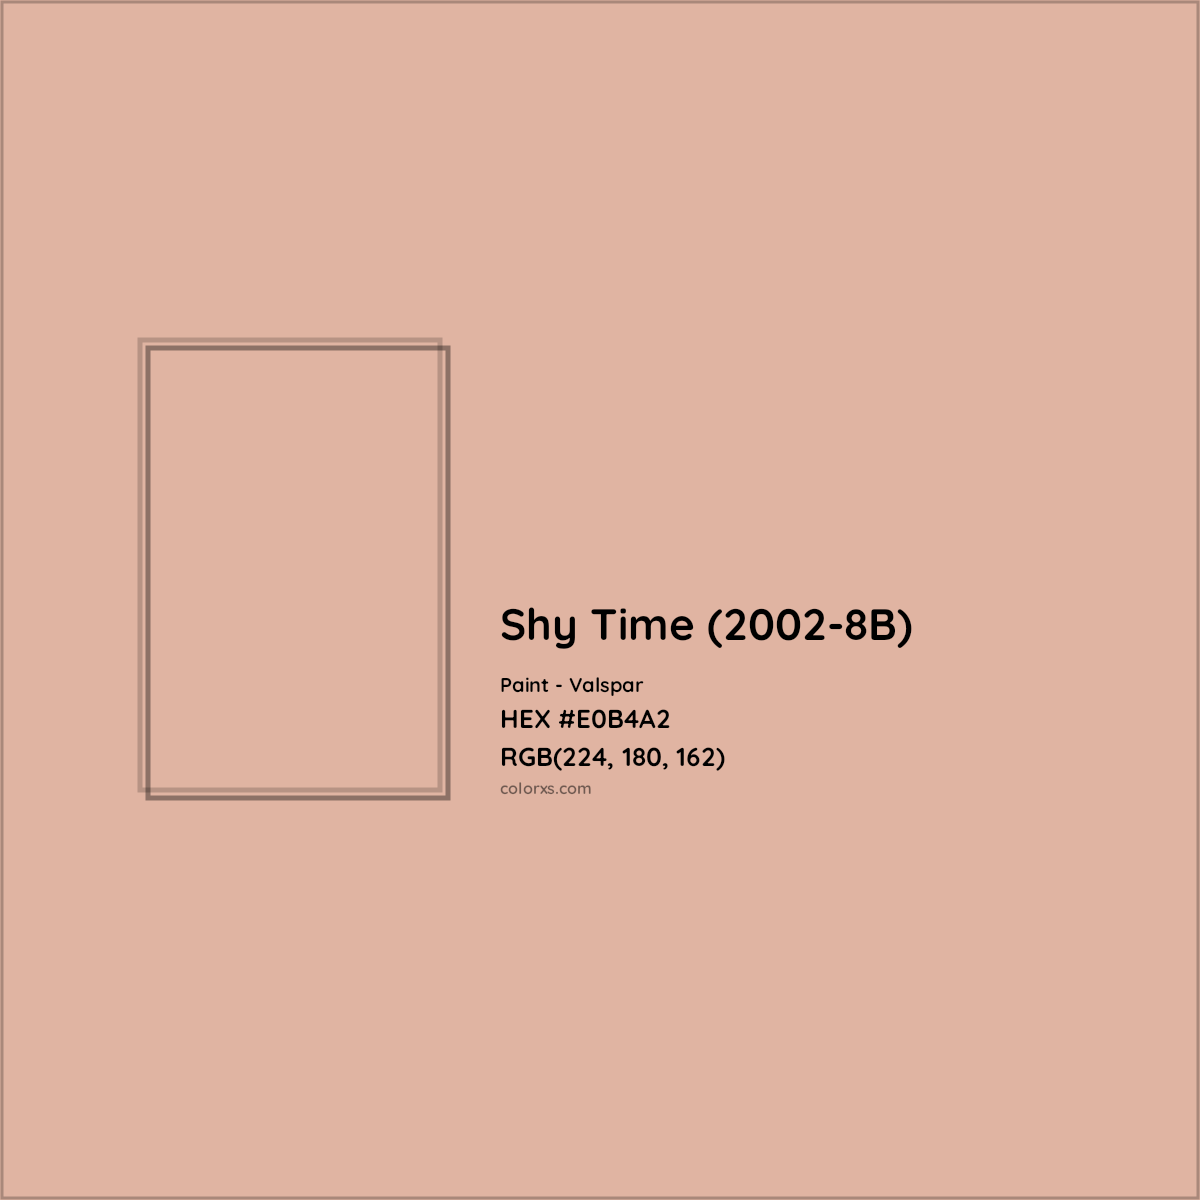 HEX #E0B4A2 Shy Time (2002-8B) Paint Valspar - Color Code